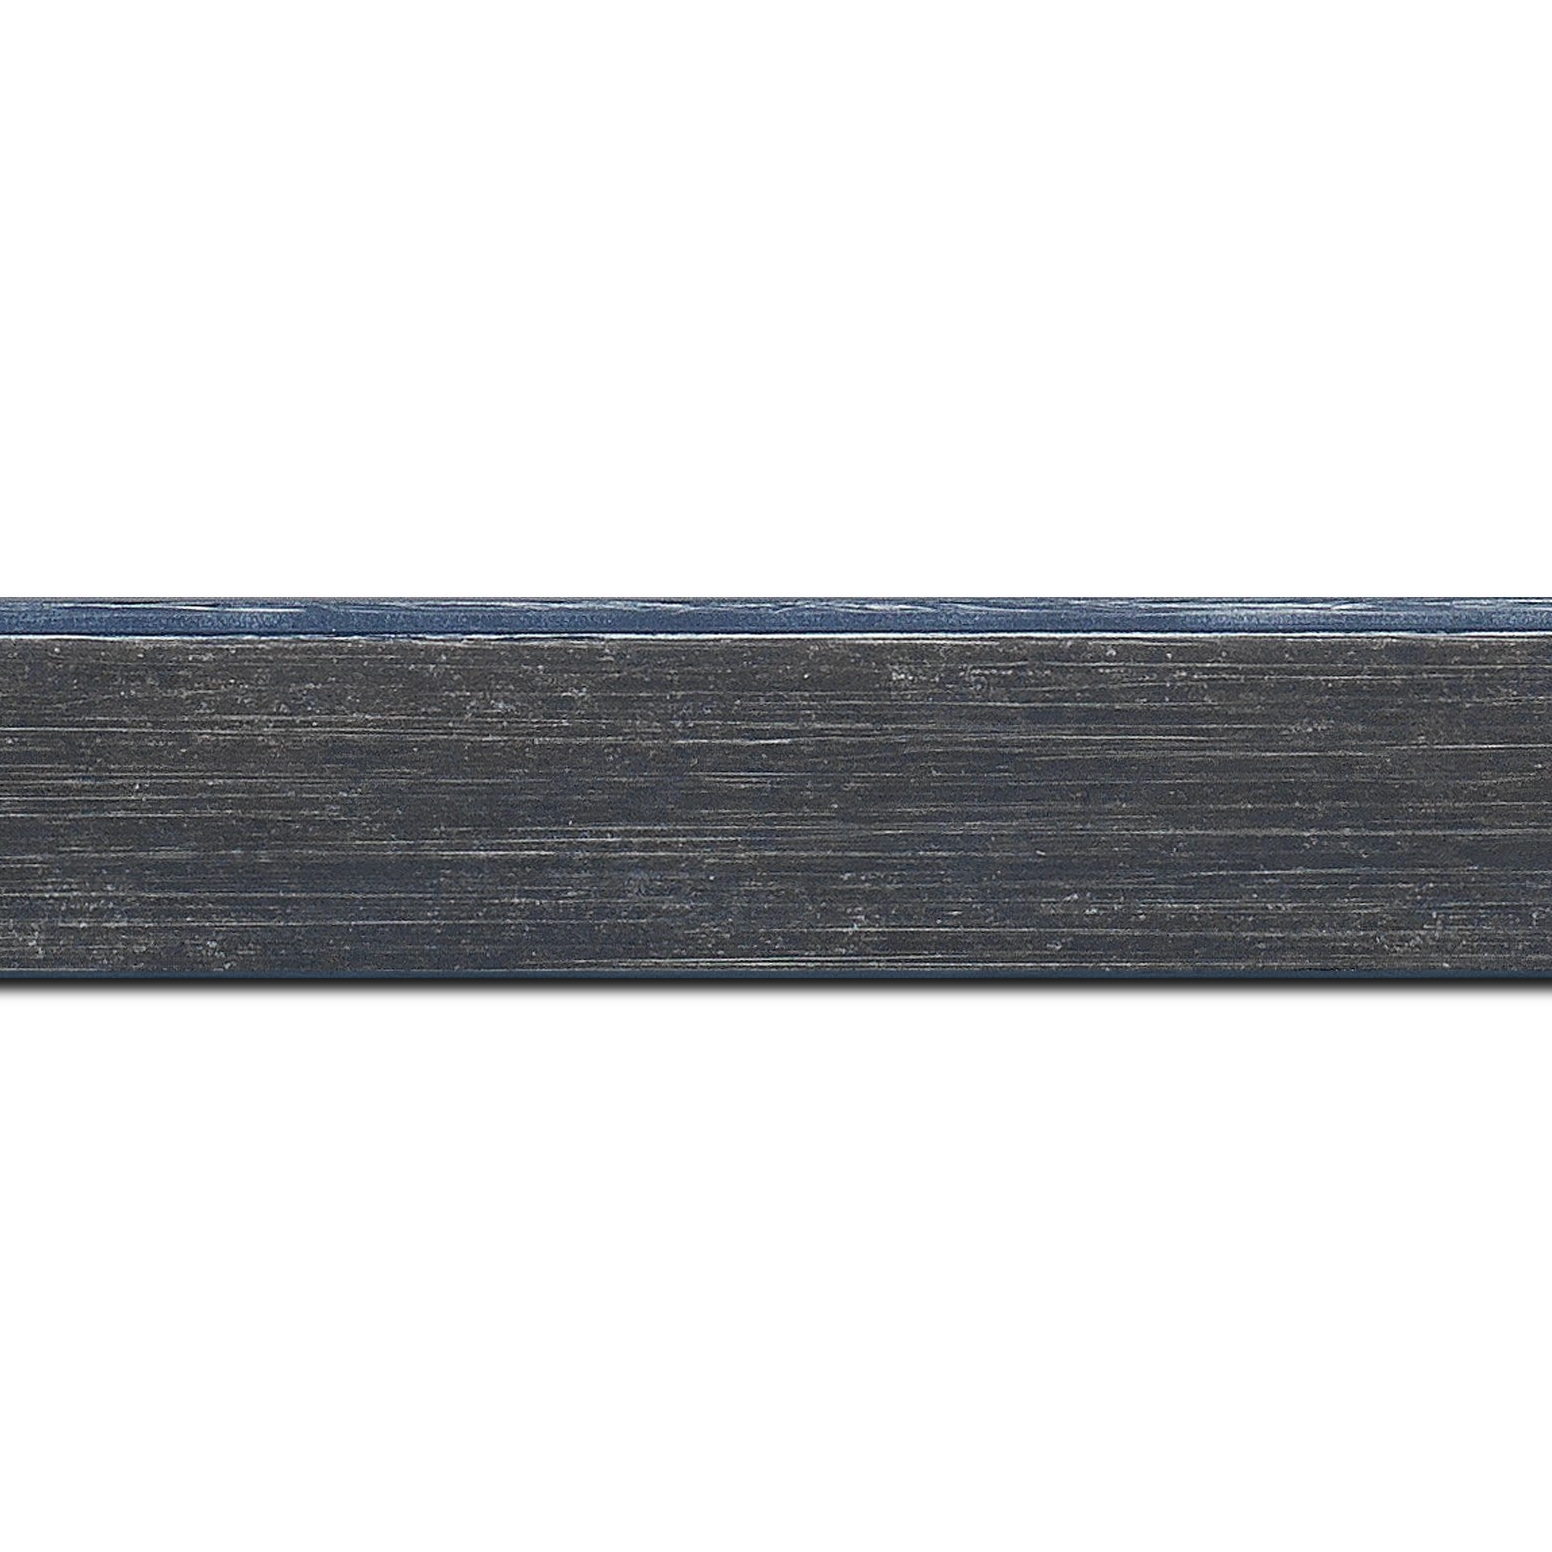 Pack par 12m, bois profil plat incliné largeur 3.7cm couleur bleu pétrole effet ressuyé (longueur baguette pouvant varier entre 2.40m et 3m selon arrivage des bois)